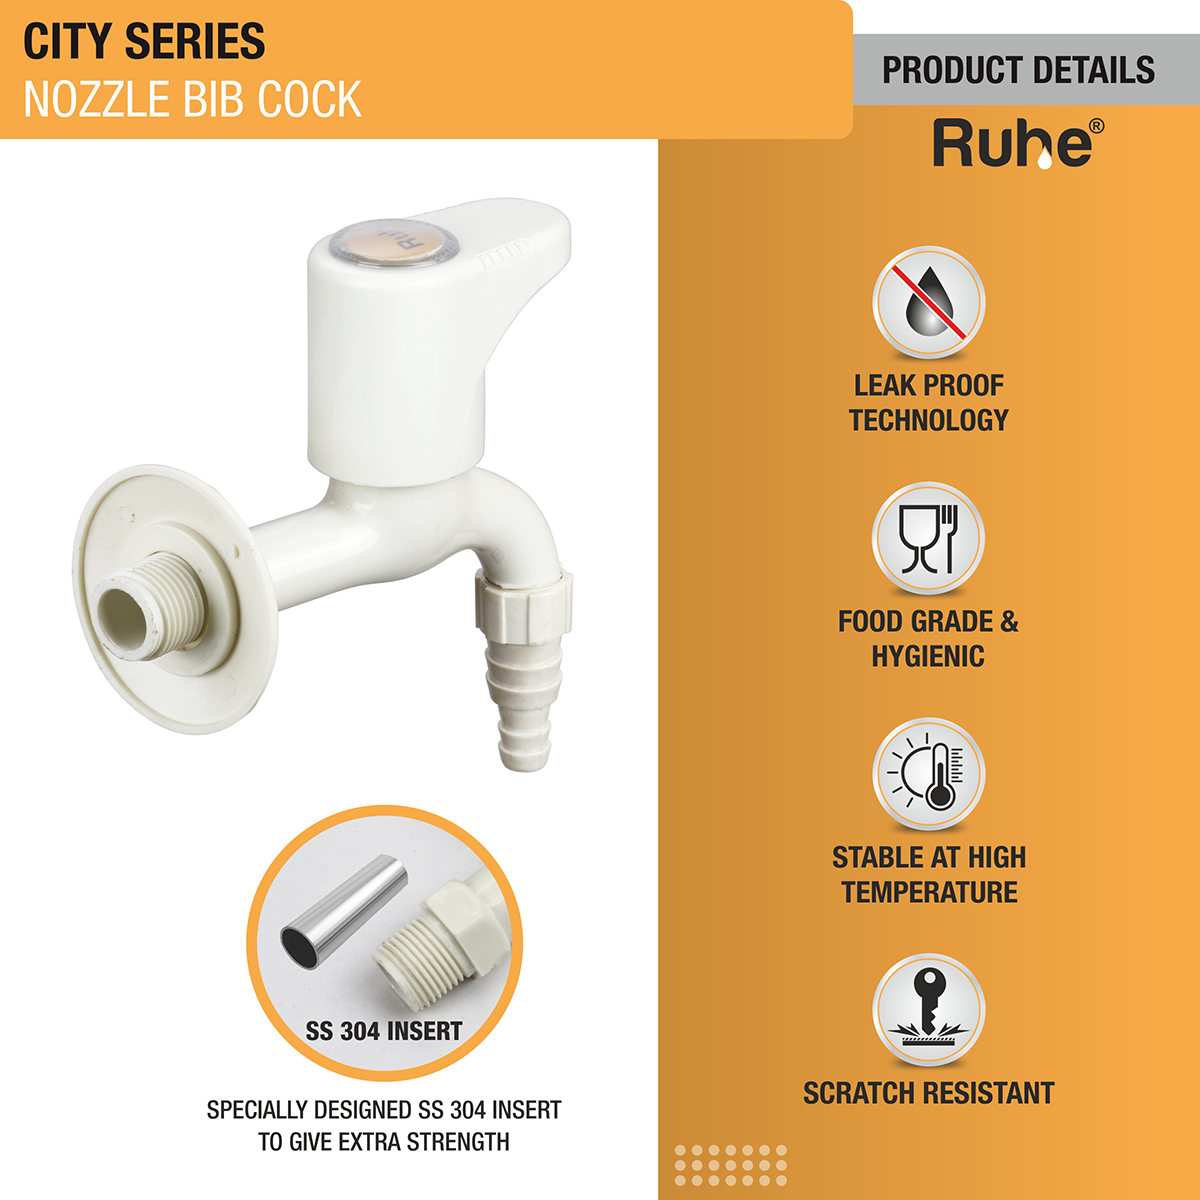 City Nozzle Bib Tap PTMT Faucet product details